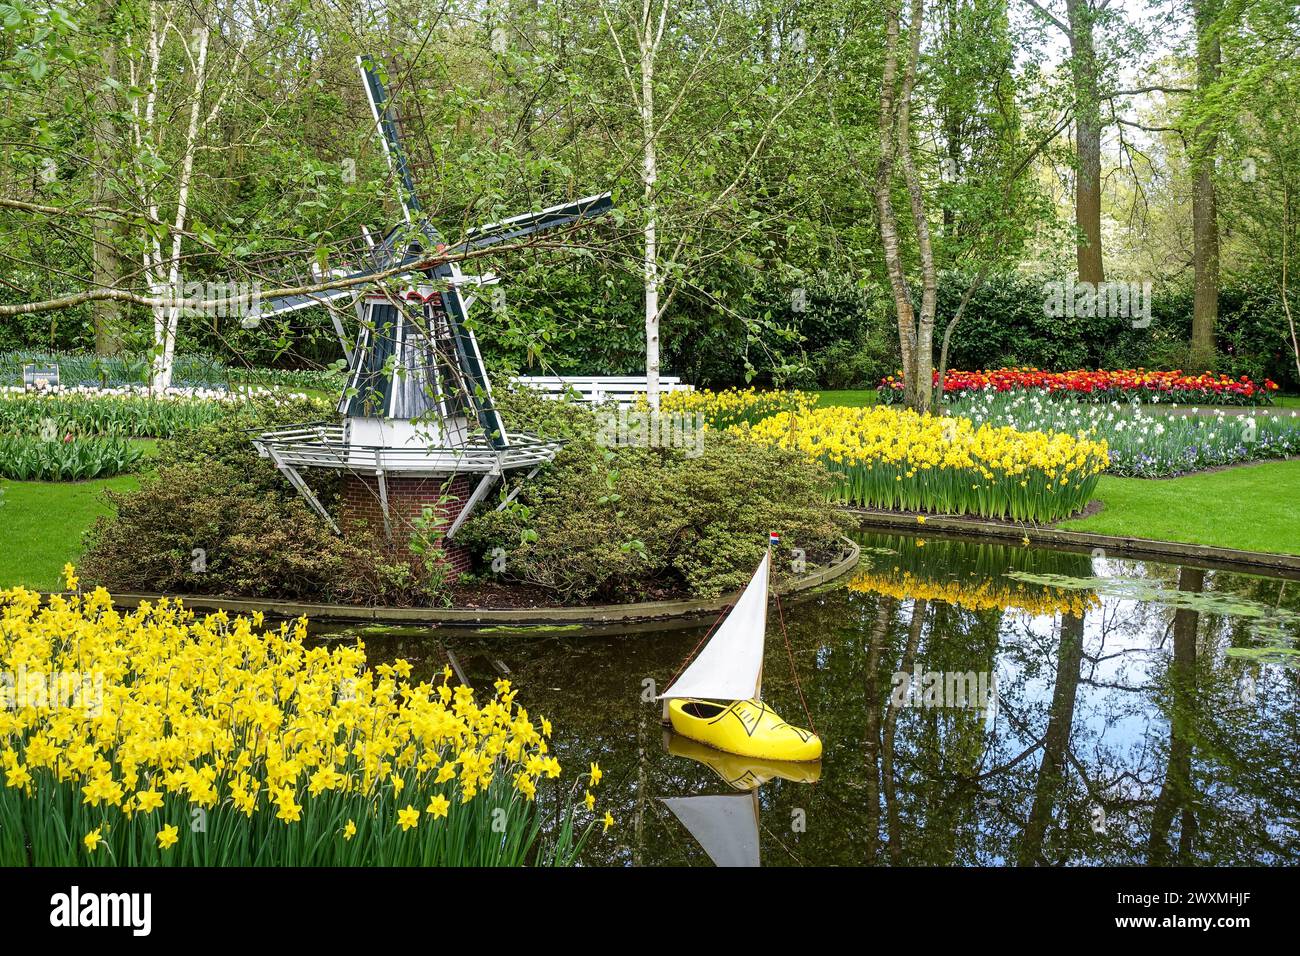 Cliché olandesi nei giardini Keukenhof: Tulipani gialli, un mulino a vento, zoccoli di legno e una barca a vela Foto Stock